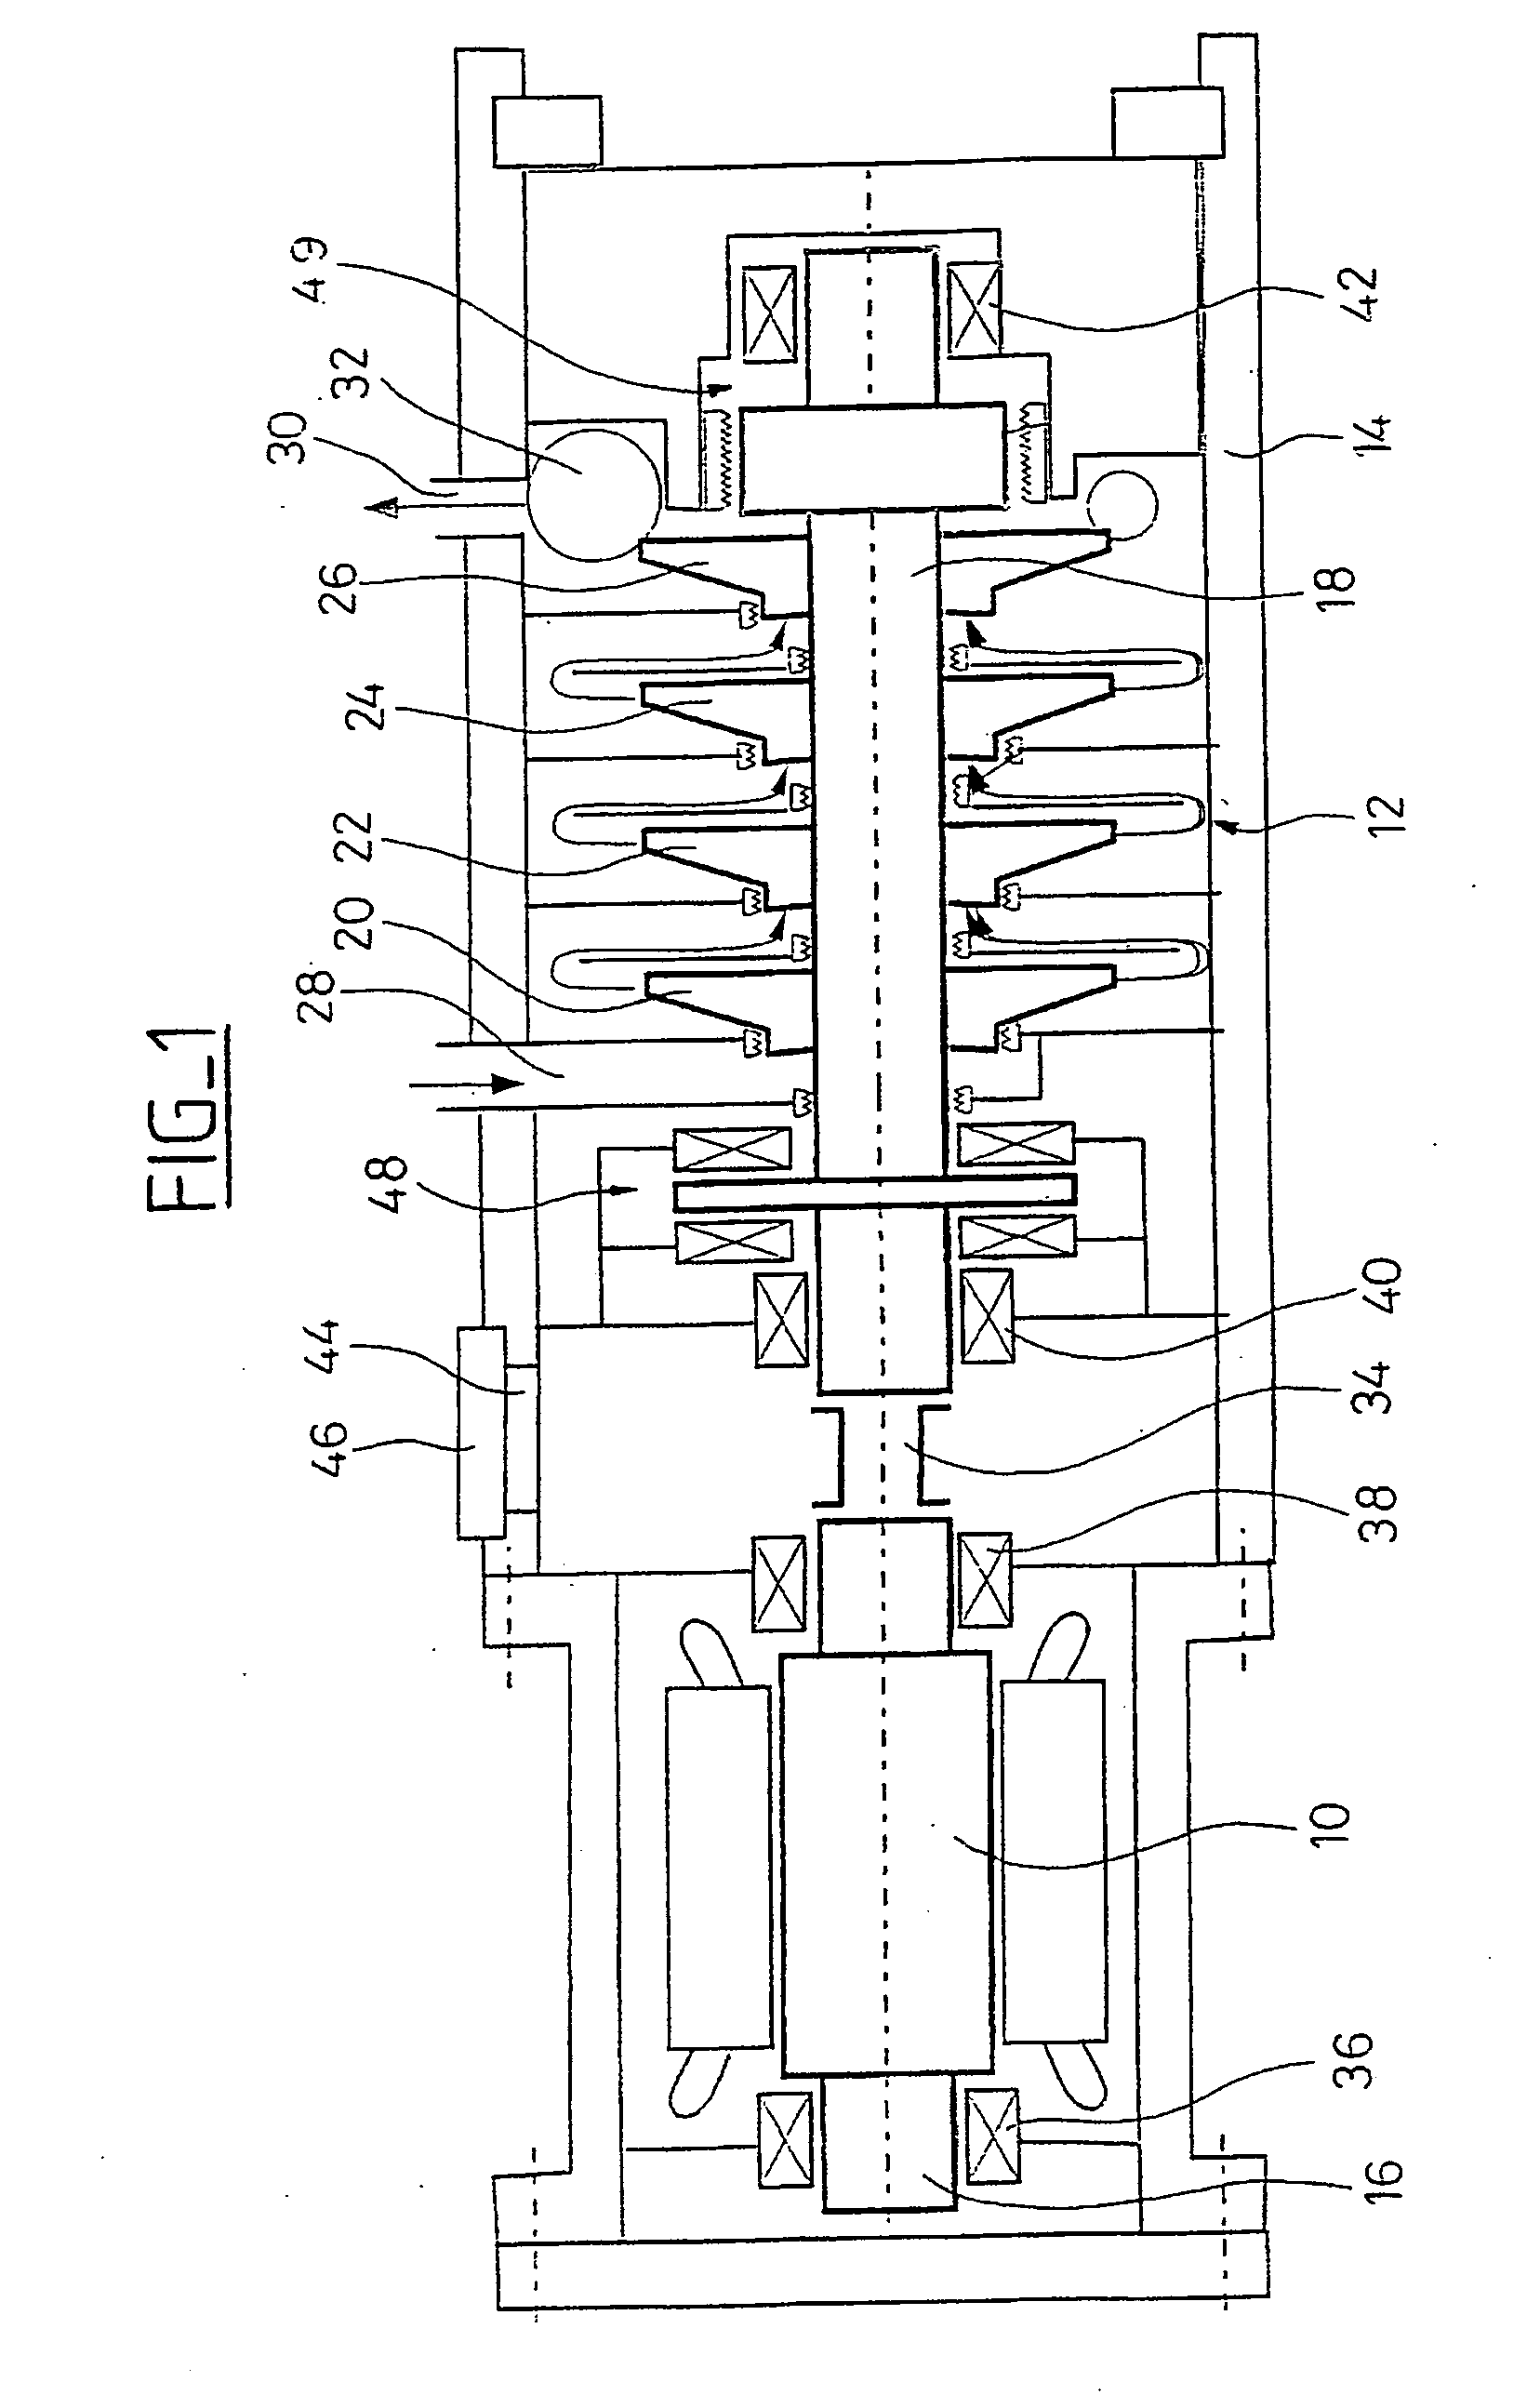 Centrifugal motor-compressor unit